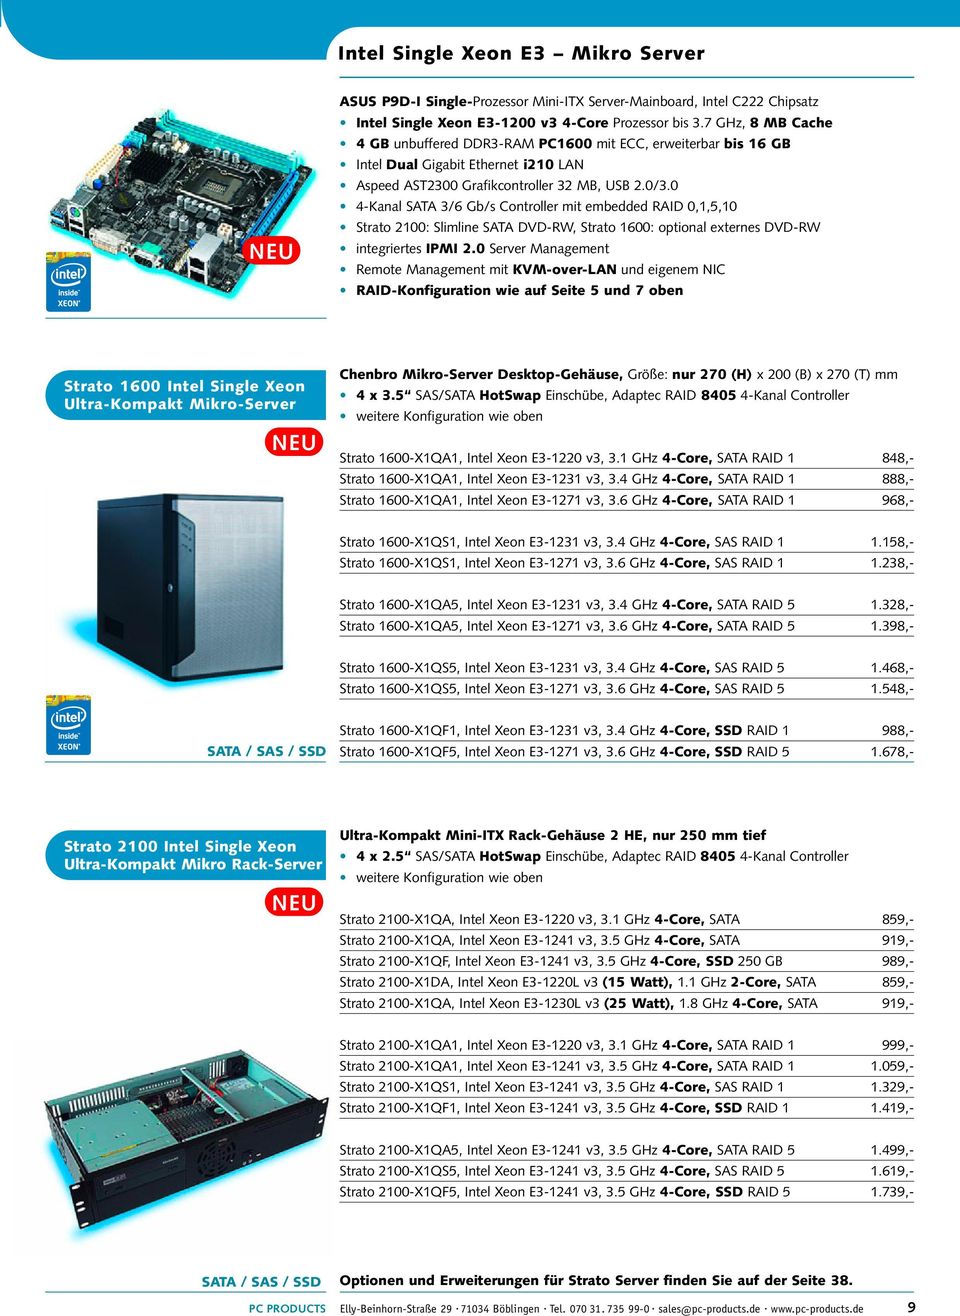 0 4-Kanal SATA 3/6 Gb/s Controller mit embedded RAID 0,1,5,10 Strato 2100: Slimline SATA DVD-RW, Strato 1600: optional externes DVD-RW integriertes IPMI 2.